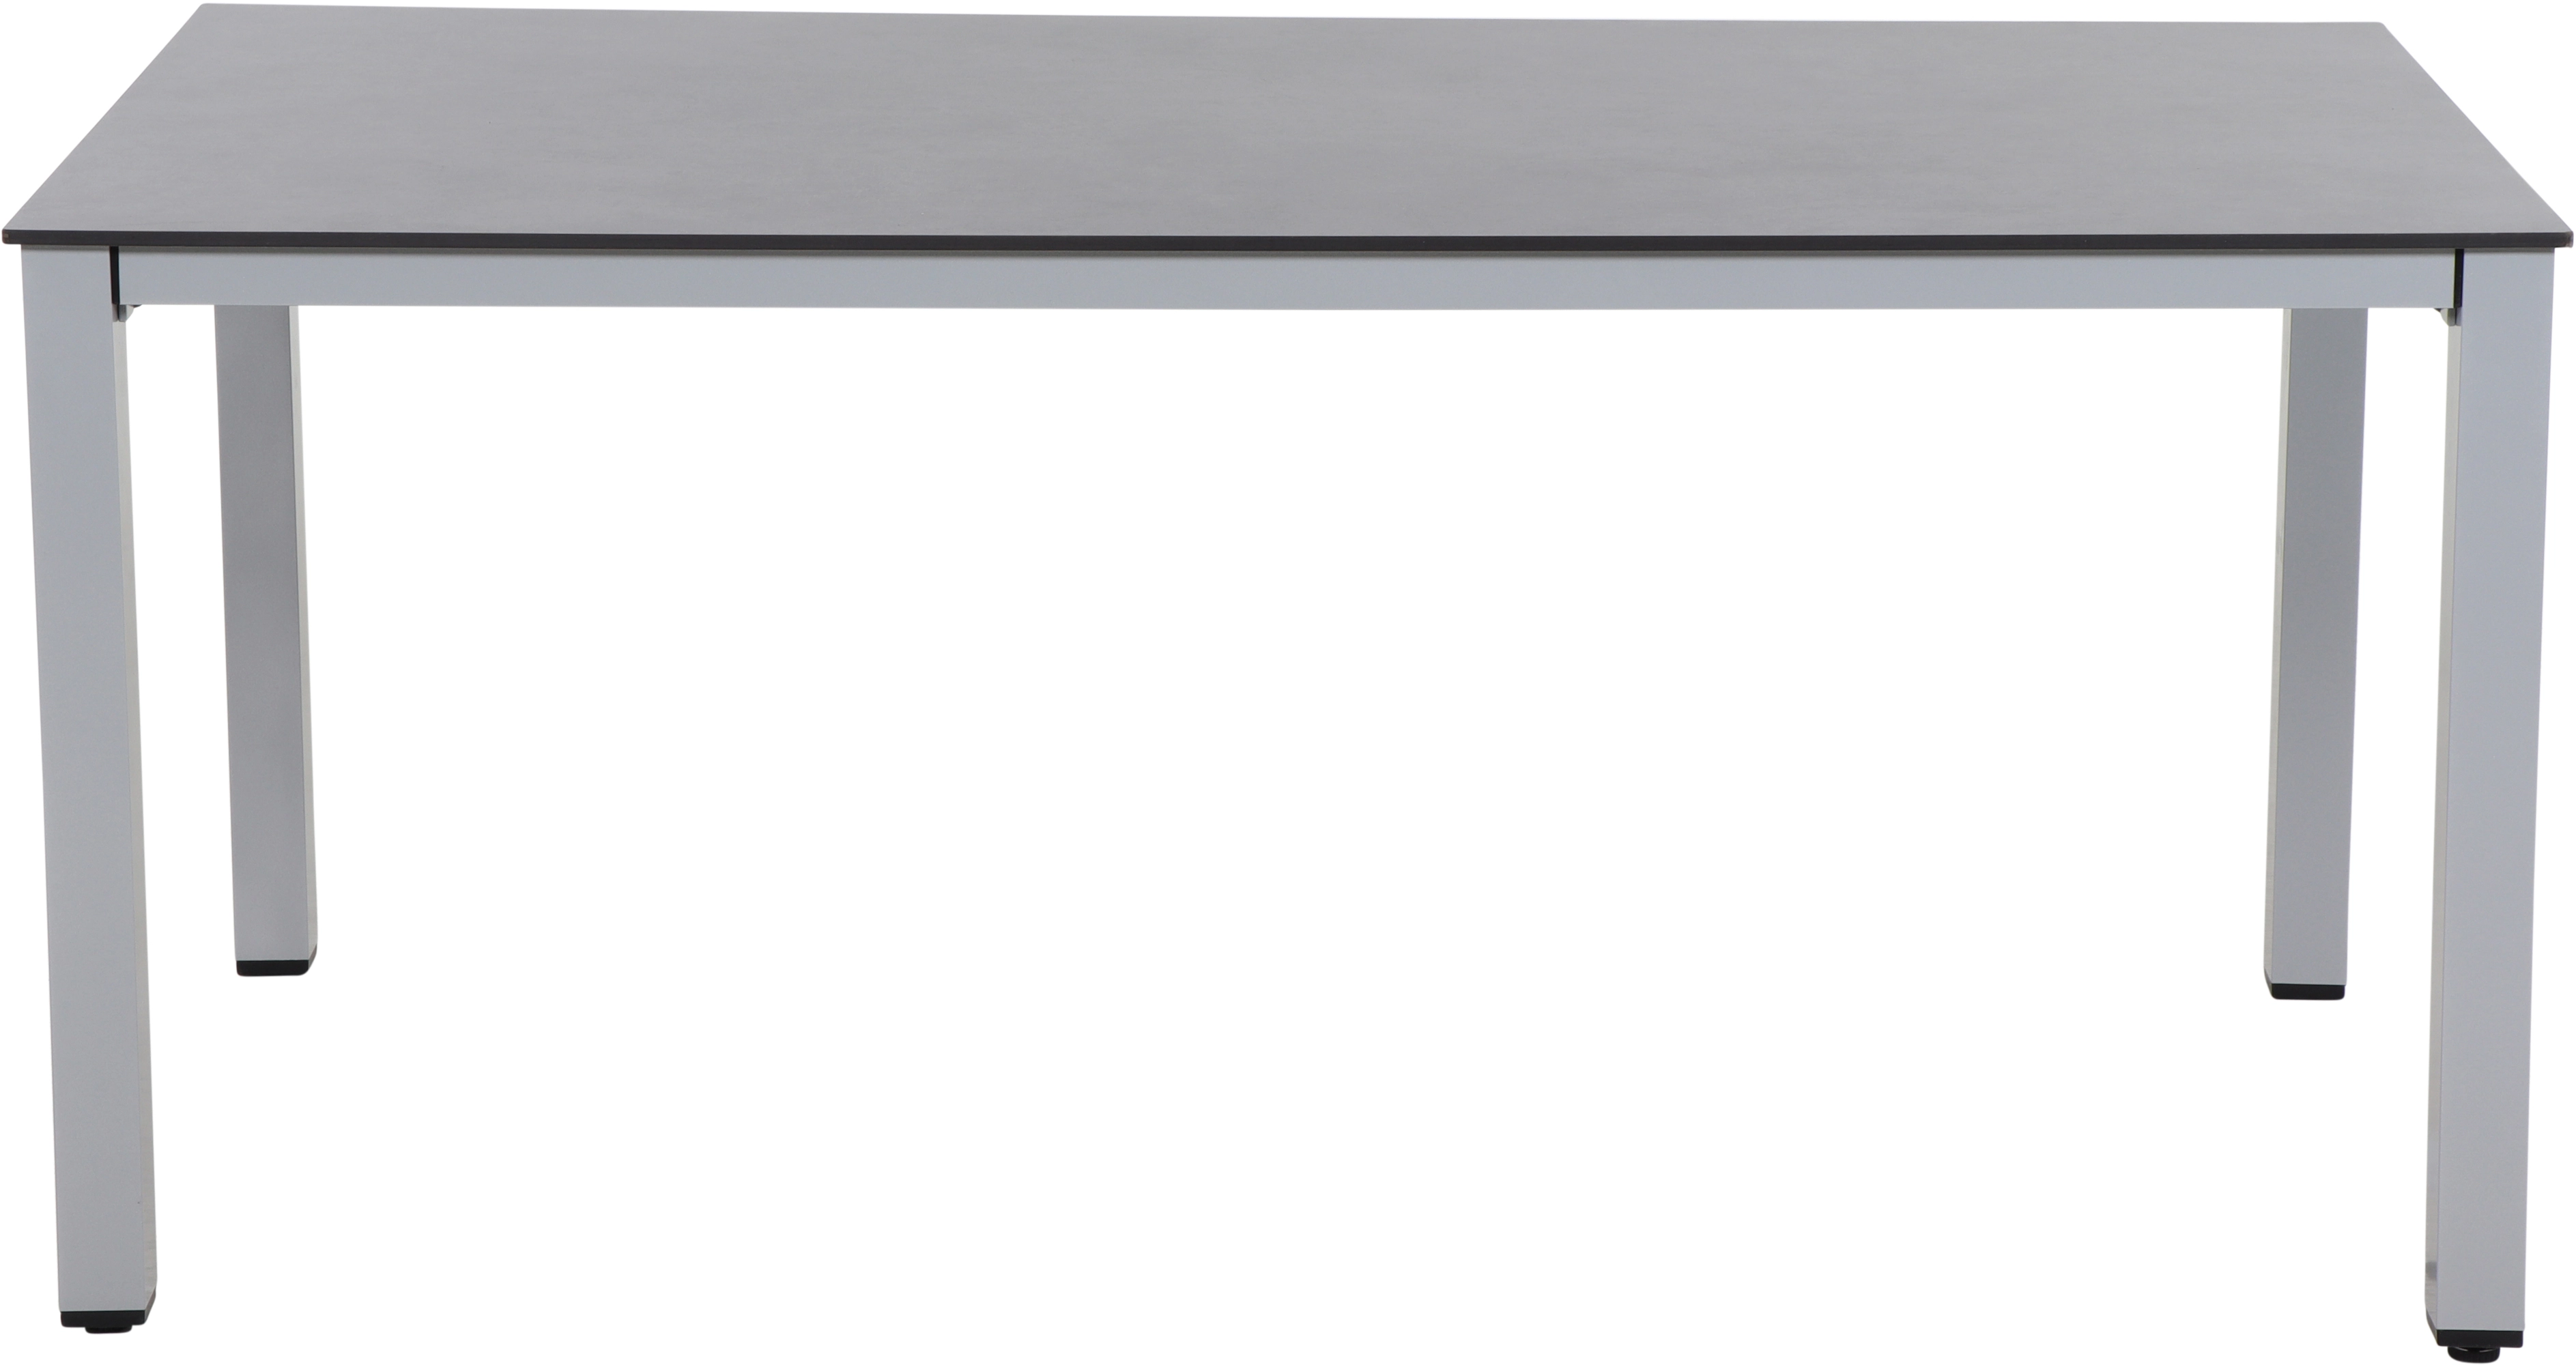 OBI Stahl kaufen x Lofttisch Sola 90 cm Siena bei Garden cm Silber 160